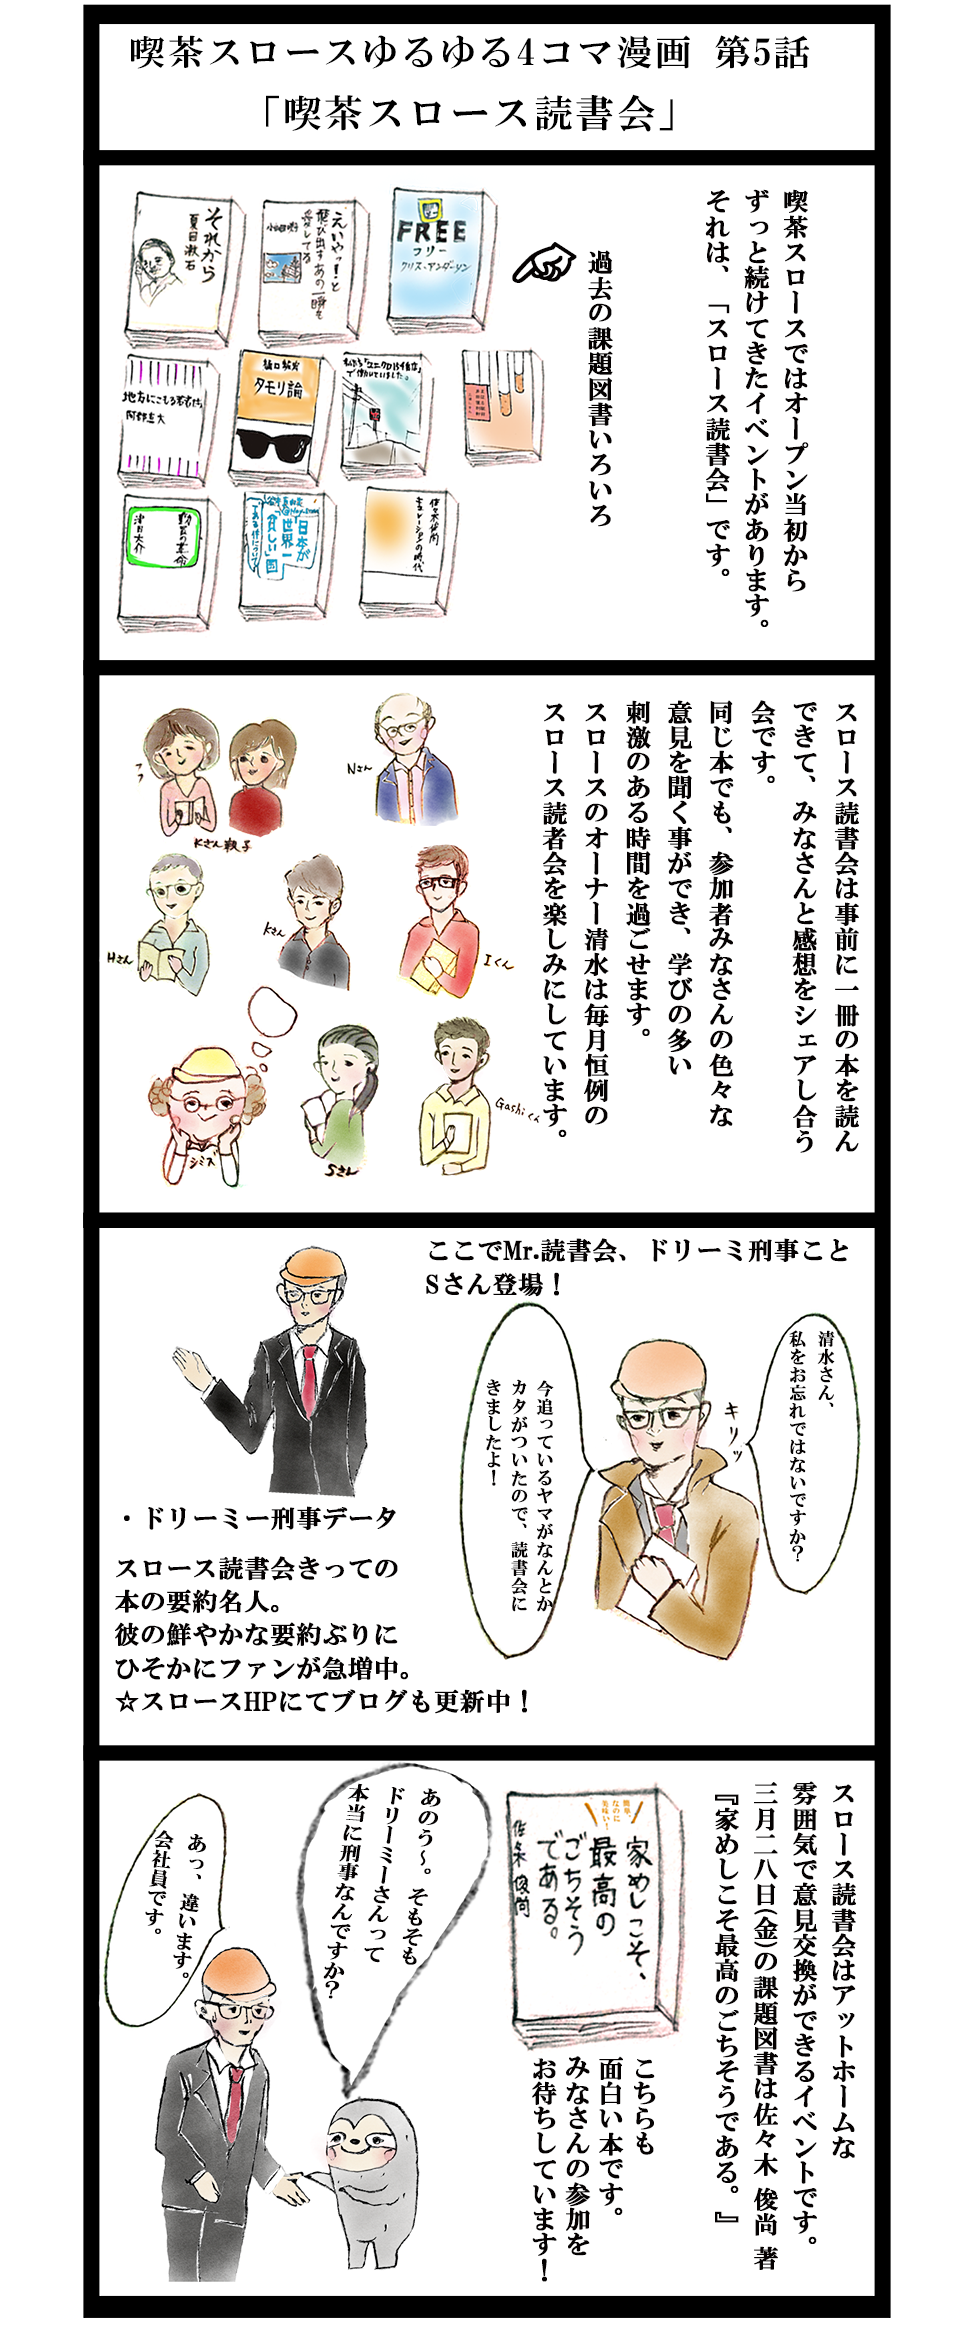 喫茶スロース4コマ漫画5話